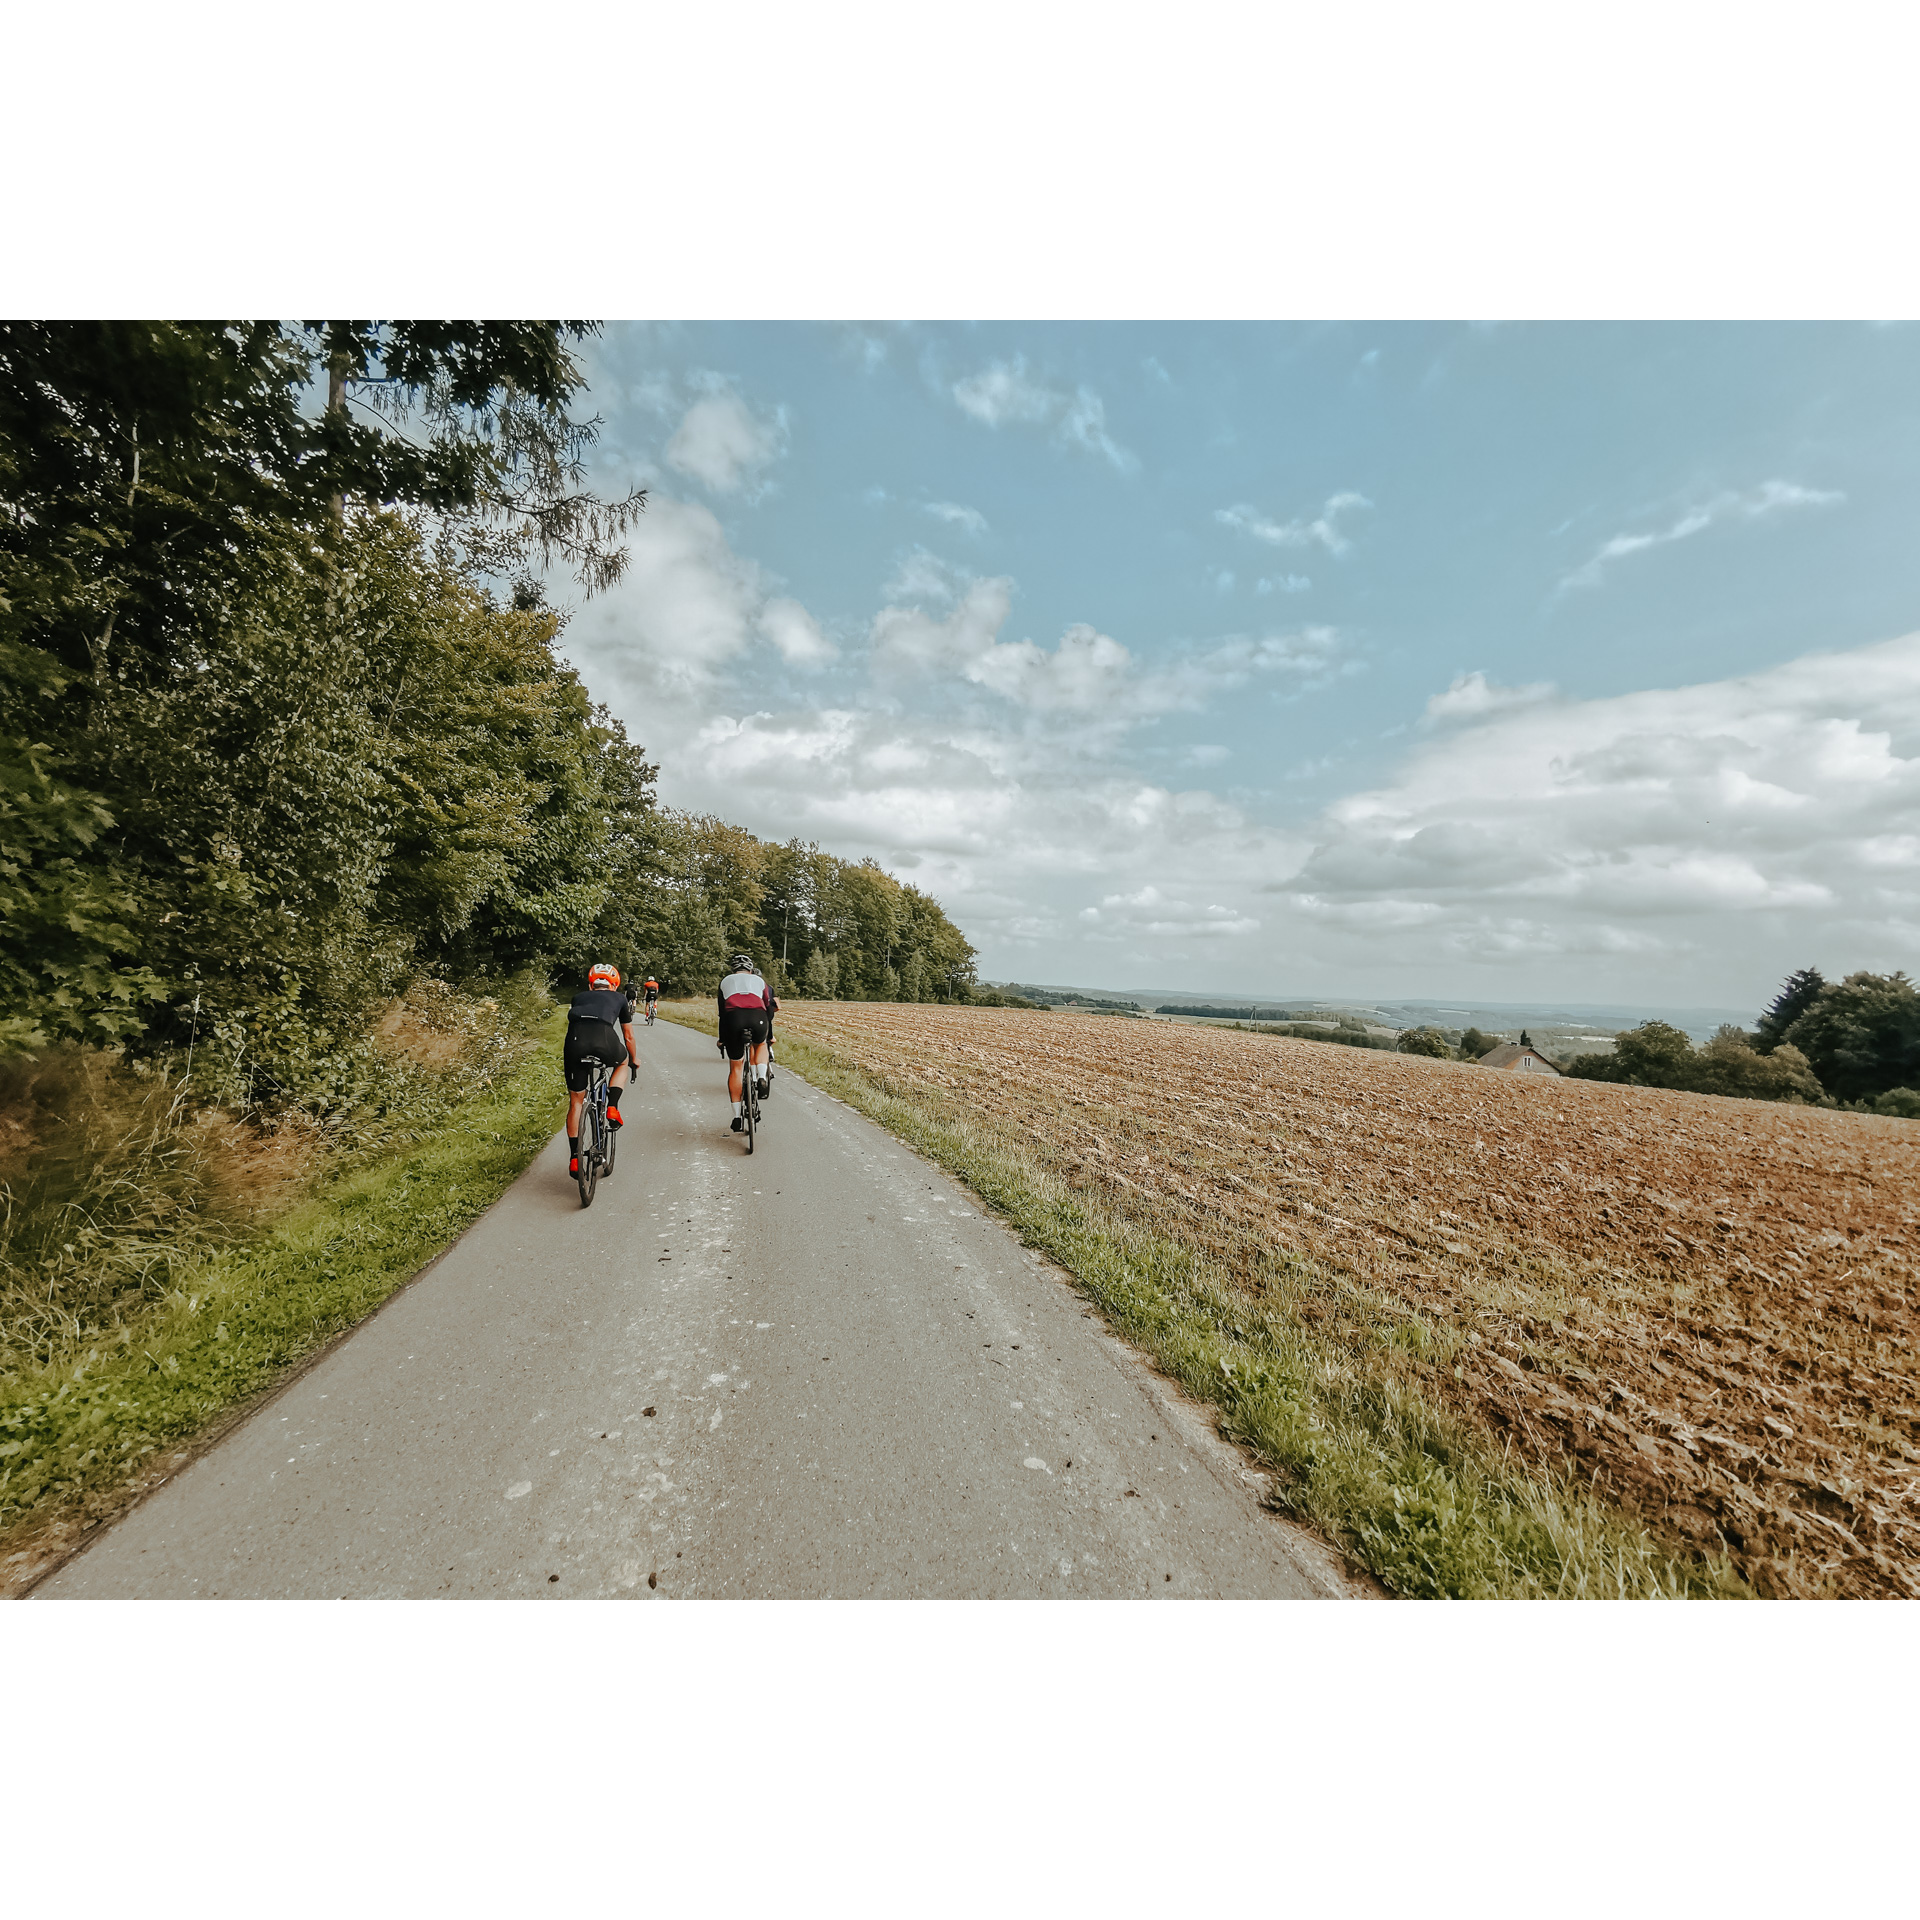 5 rowerzystów w strojach kolarskich i kaskach jadących drogą asfaltową, z lewej strony zielone drzewa, z prawej pole uprawne, w tle błękitne niebo i chmury